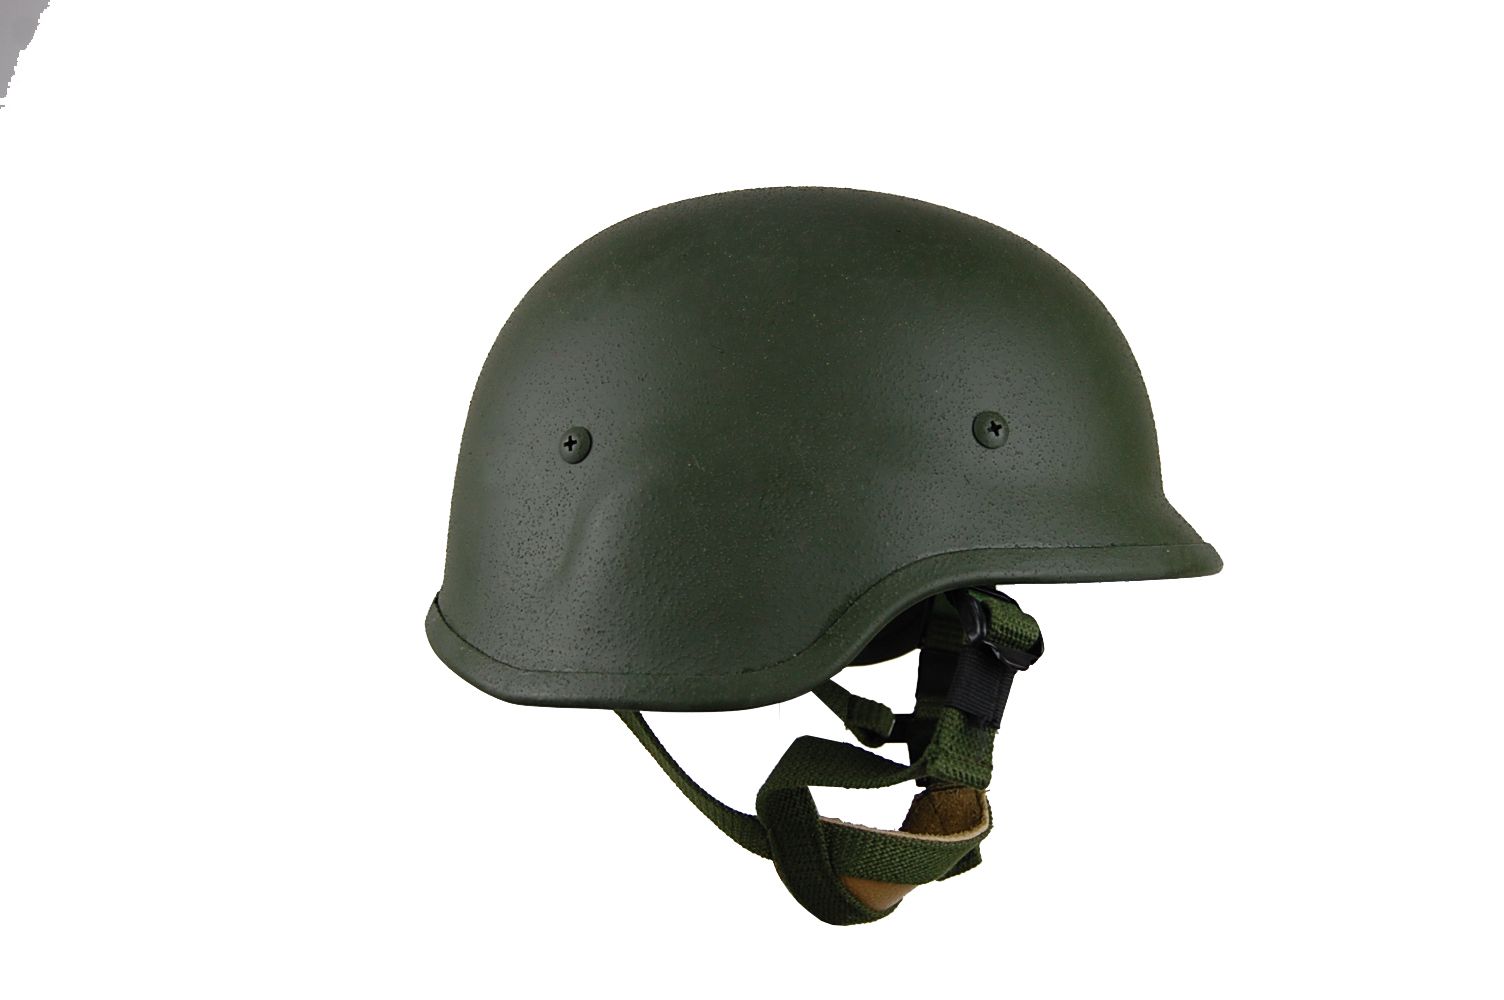 m88 防弹钢盔 军绿色-金属防弹头盔-防弹头盔-防护装备-江西长城防护